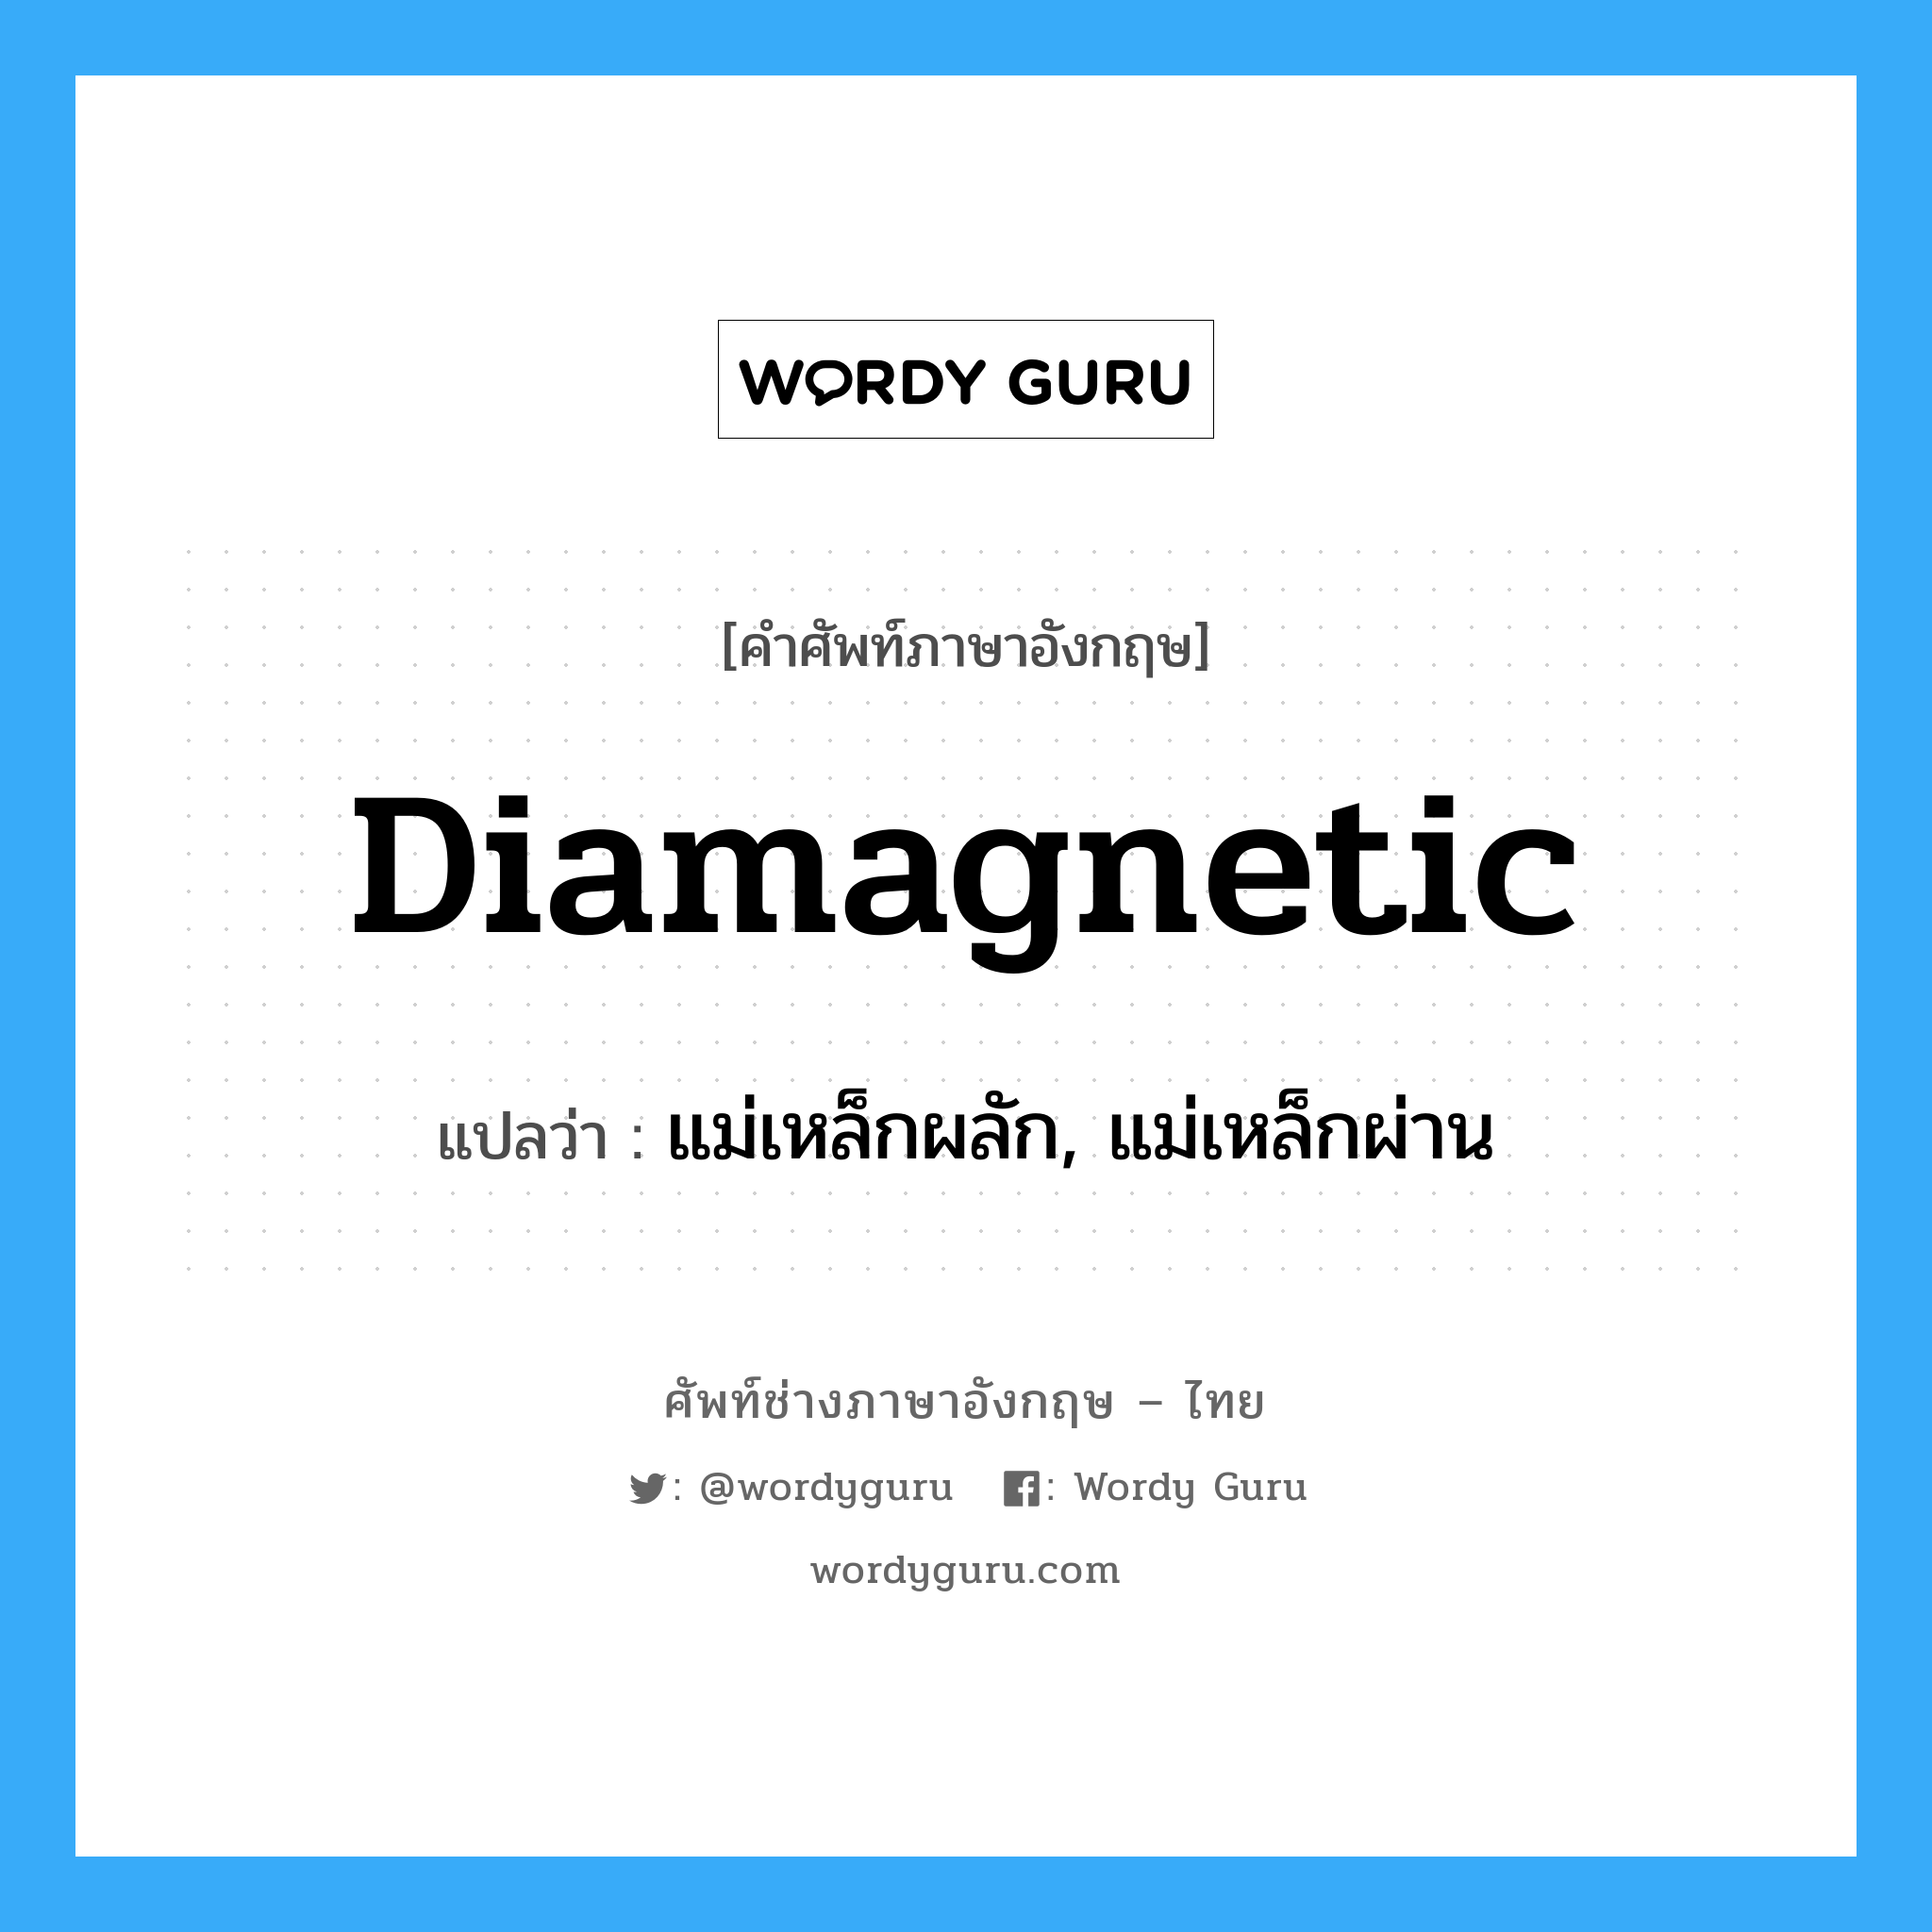 diamagnetic แปลว่า?, คำศัพท์ช่างภาษาอังกฤษ - ไทย diamagnetic คำศัพท์ภาษาอังกฤษ diamagnetic แปลว่า แม่เหล็กผลัก, แม่เหล็กผ่าน